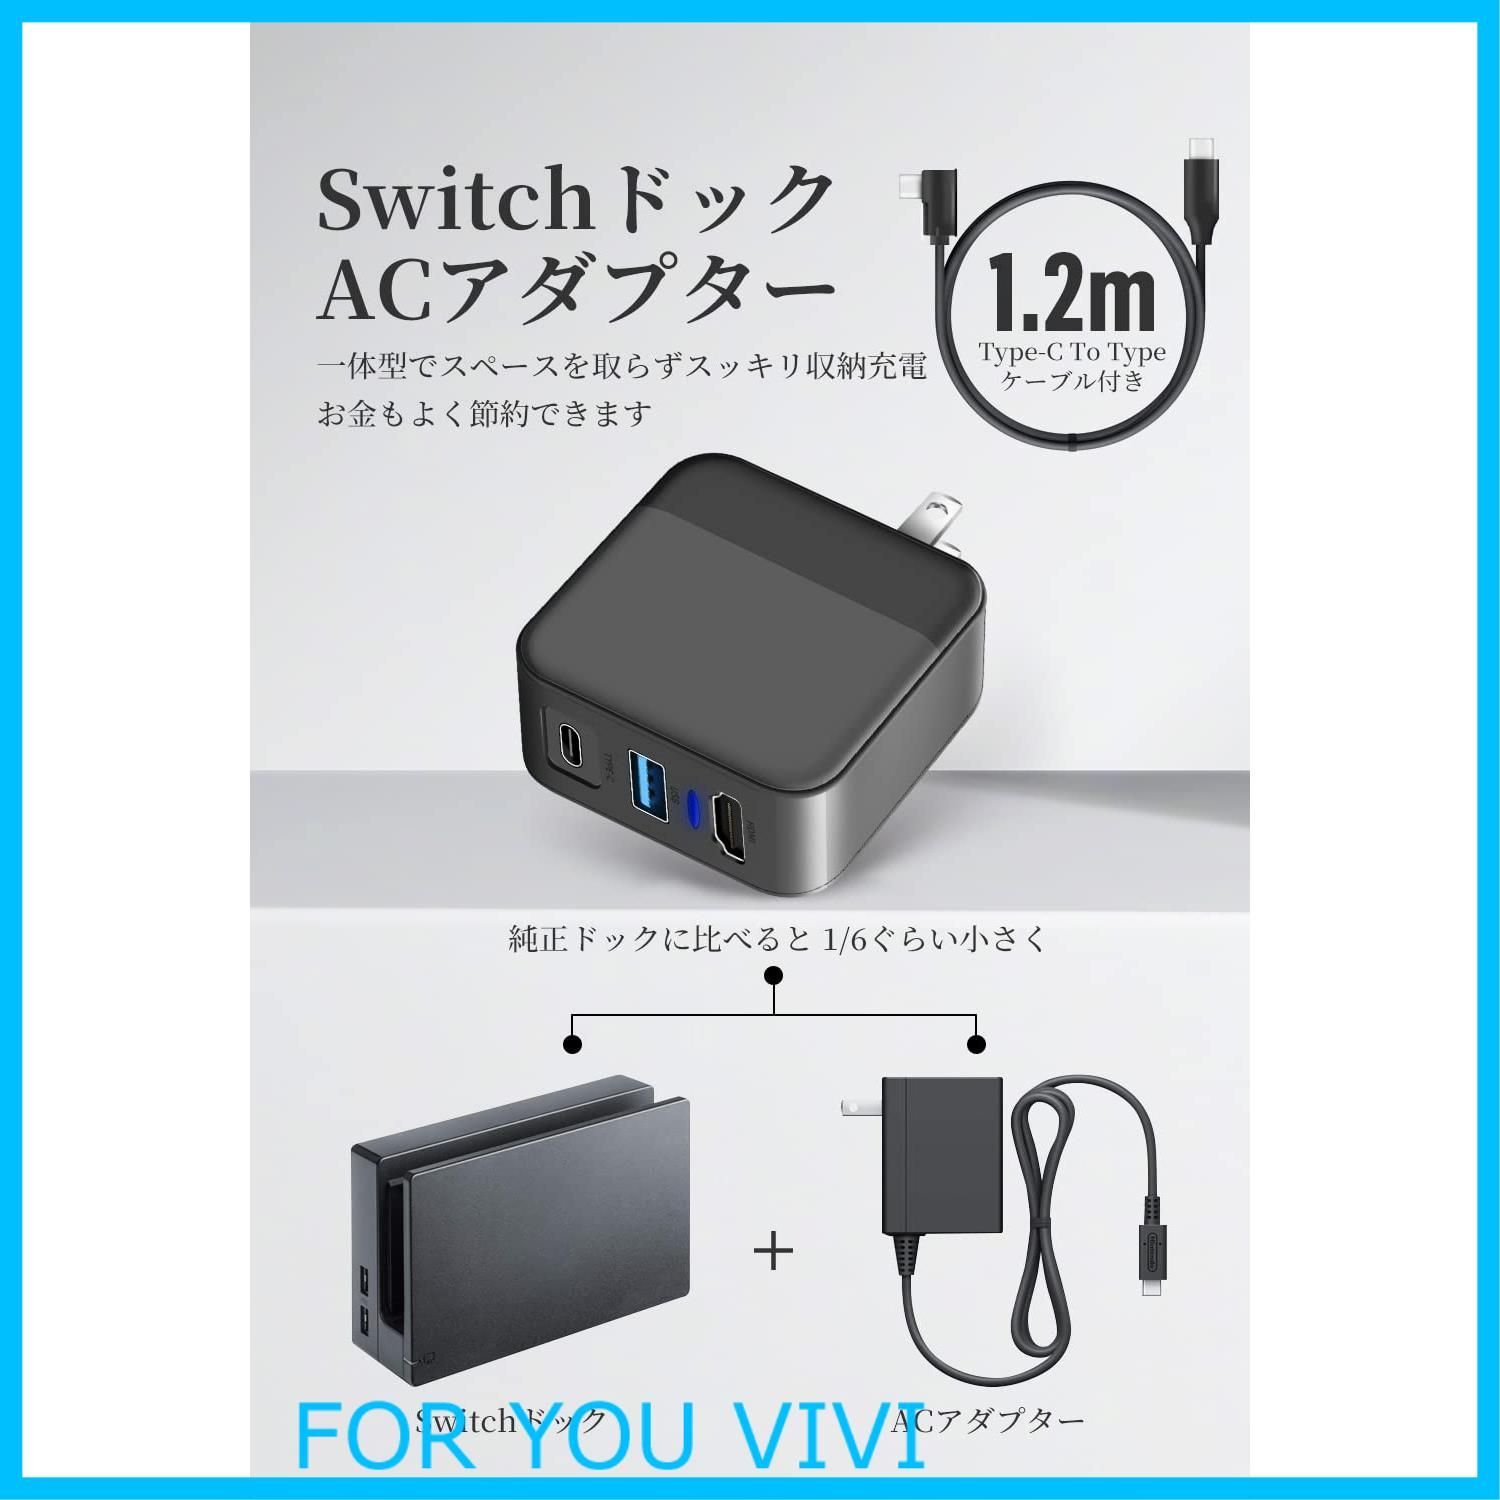 特価商品】3in1 Switch/Switch OLED対応 ACアダプター 多機能ドック